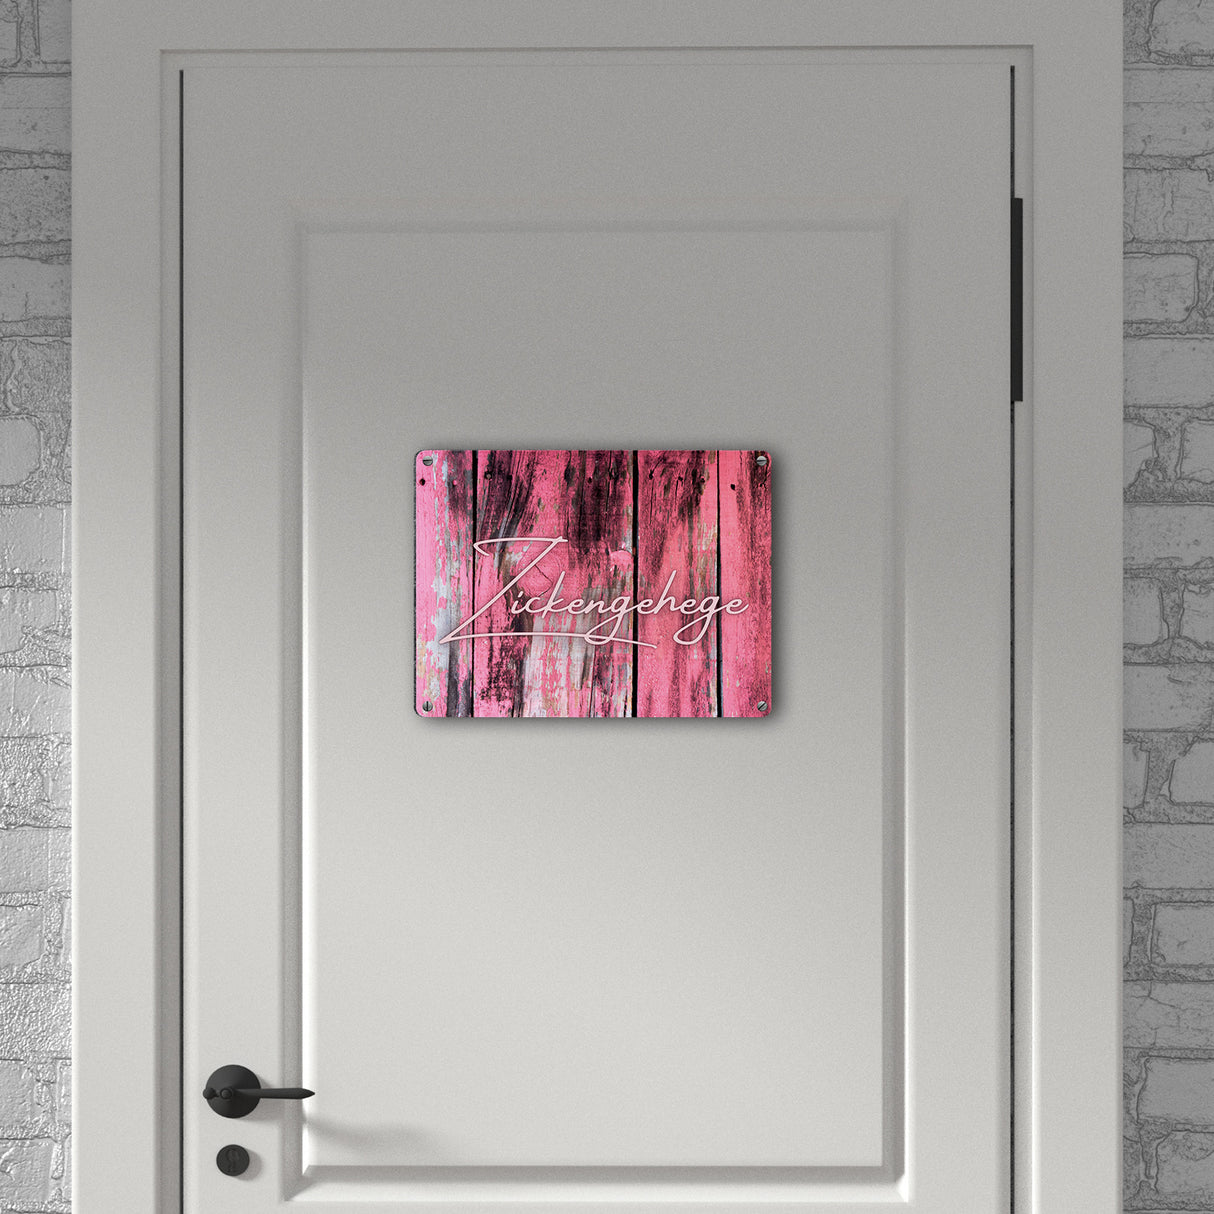 Zickengehege Metallschild in 15x20 cm für deine Tochter in pink